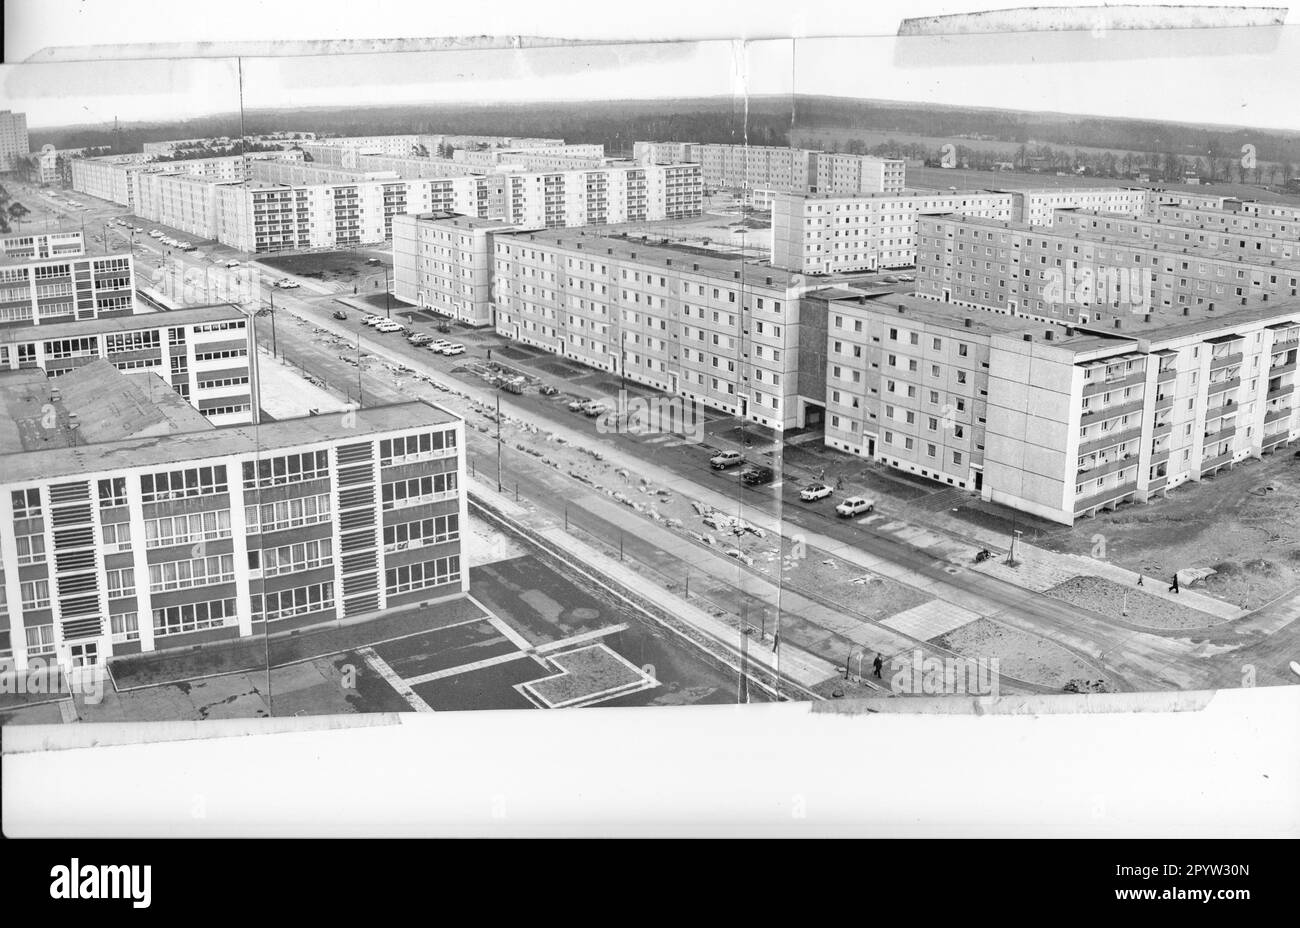 Potsdamer Wohngebiet Stern vorgefertigte Gebäude neue Gebäude Straßen Parkplätze WBS 70 Programm Magistrale Innenhöfe Balkons im März 1978 Foto: MAZ/ [maschinelle Übersetzung] Stockfoto